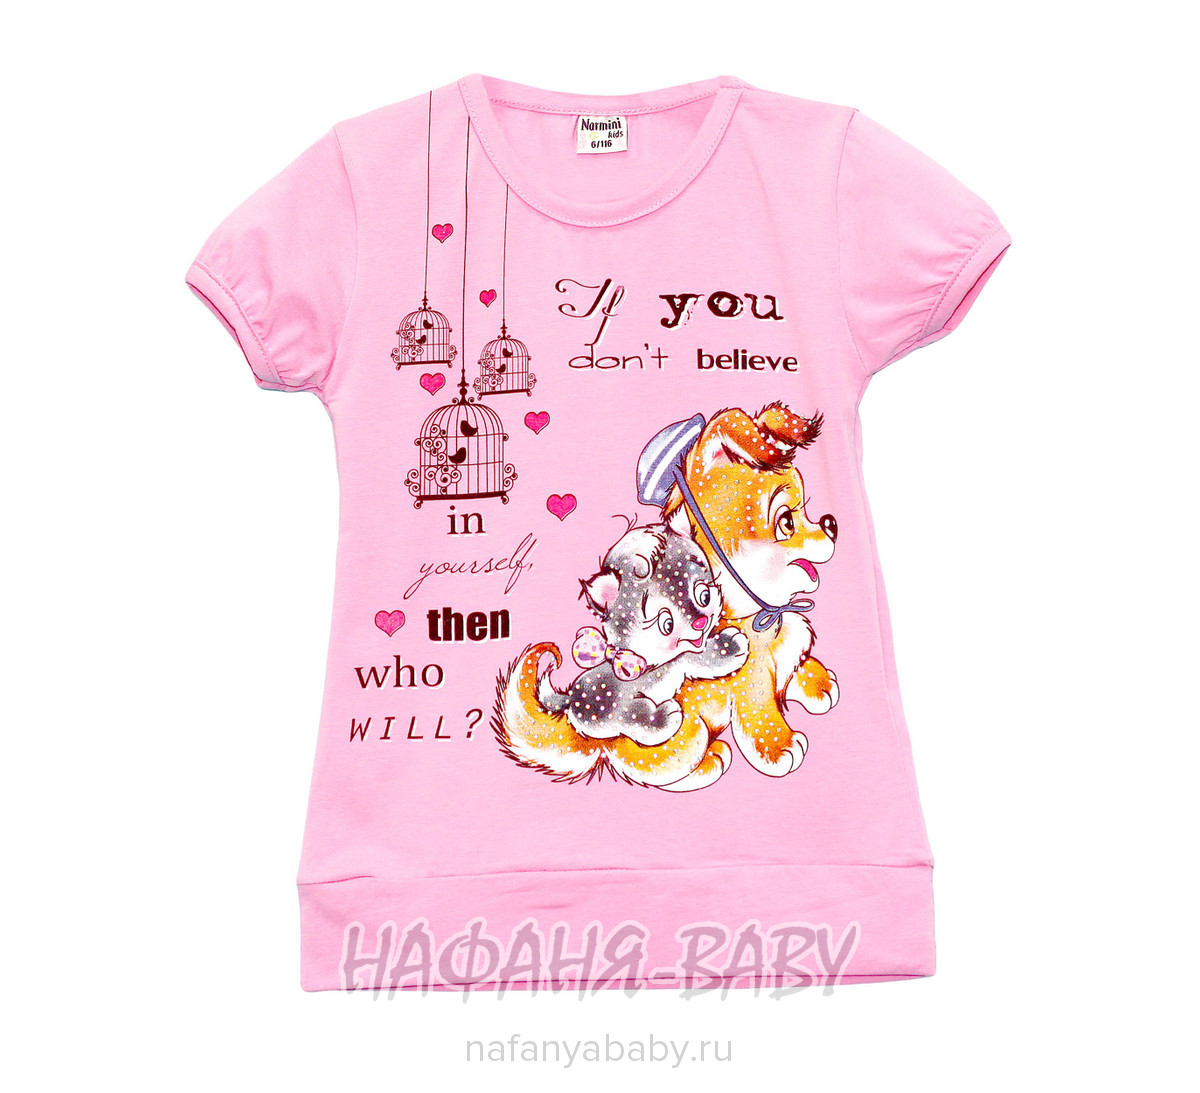 Детская футболка NARMINI арт: 5537, 1-4 года, 5-9 лет, цвет персиковый, оптом Турция